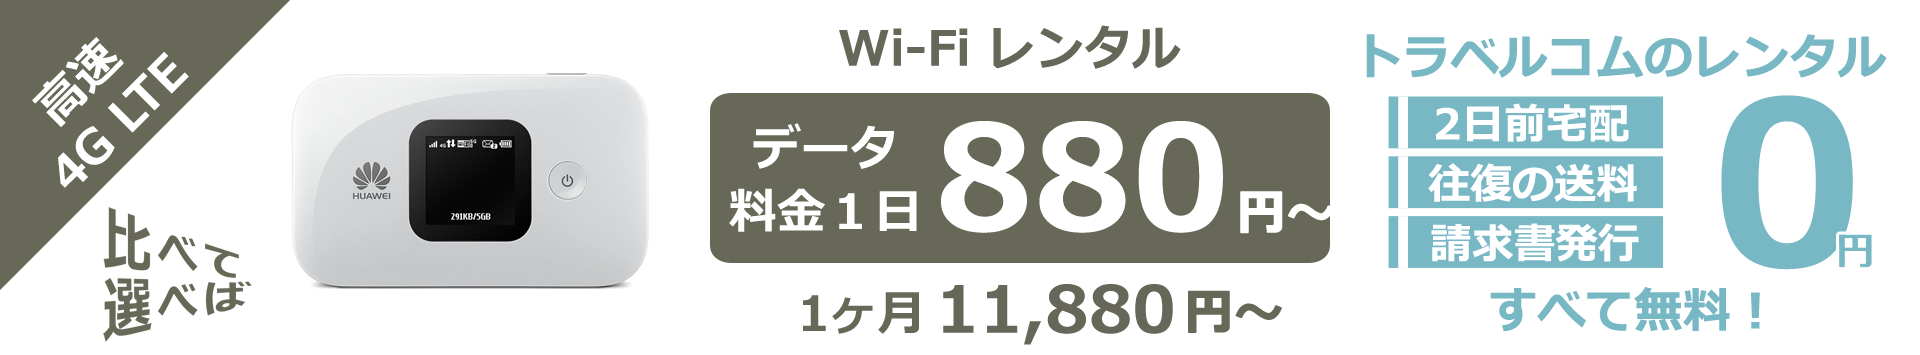 Wi-Fi レンタル